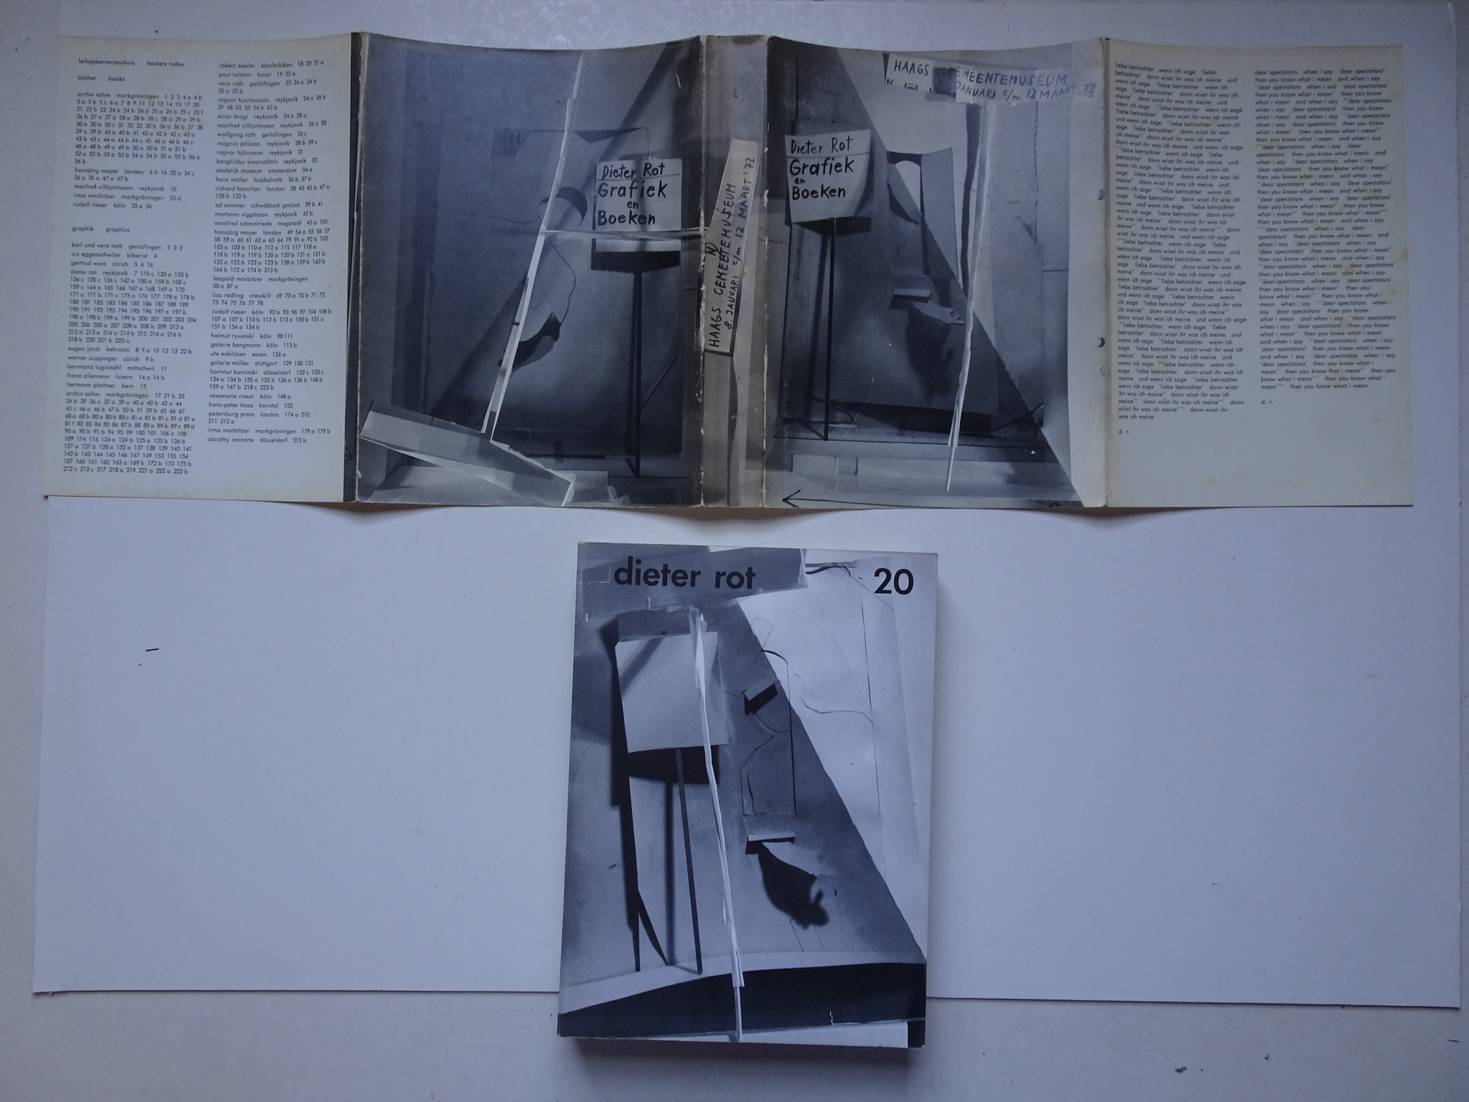 Rot, Dieter. - Gesammelte Werke. Band 20/ Collected Works. Volume 20. Bcher und Graphik  (1. Teil) aus dem Jahren 1947 bis 1971. Books and Graphics (Part 1). From 1947 until 1971.